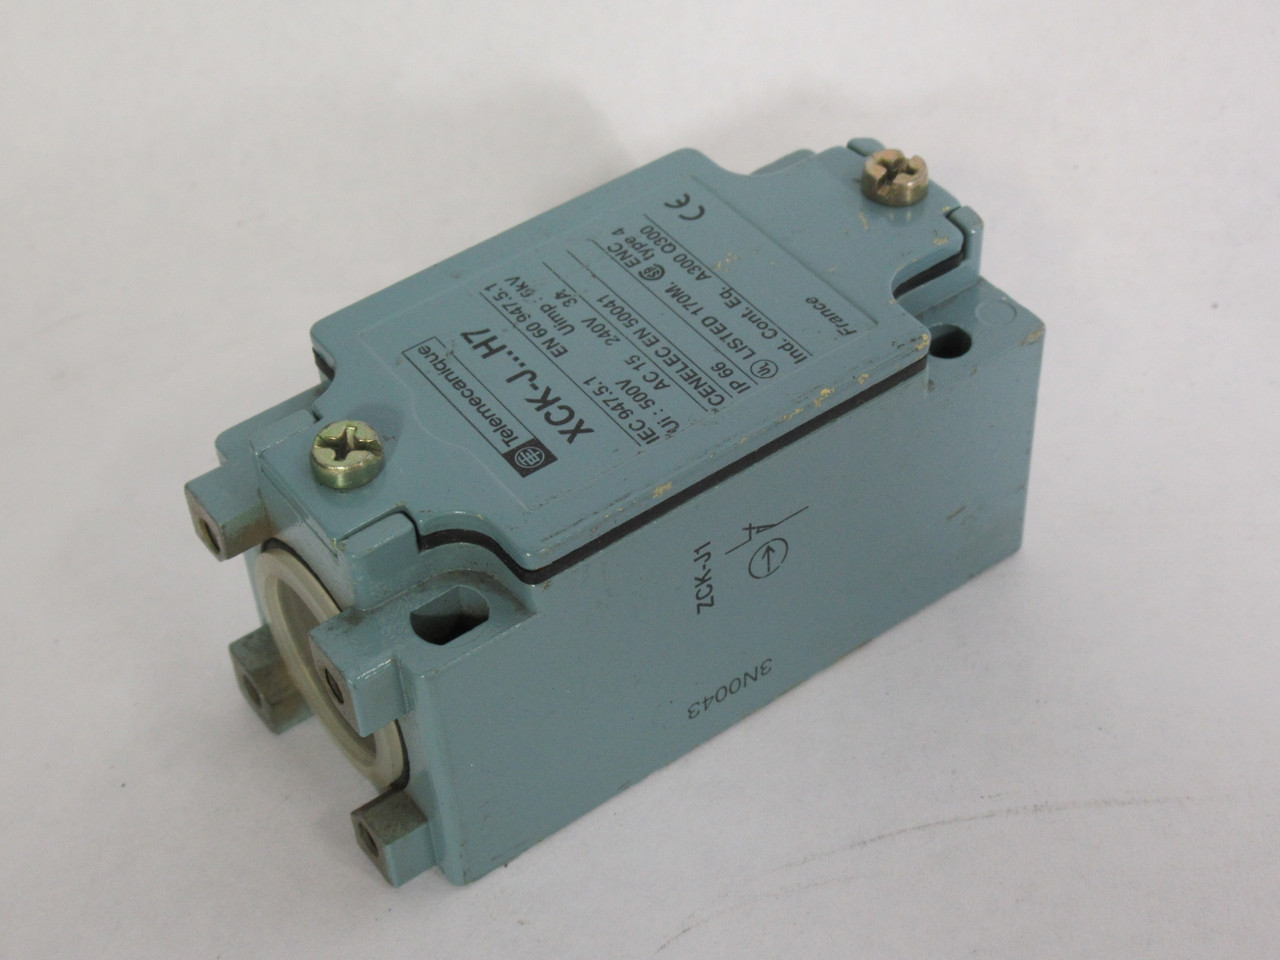 Telemecanique XCK-J1H7 Limit Switch 10A 240VAC ! NOP !